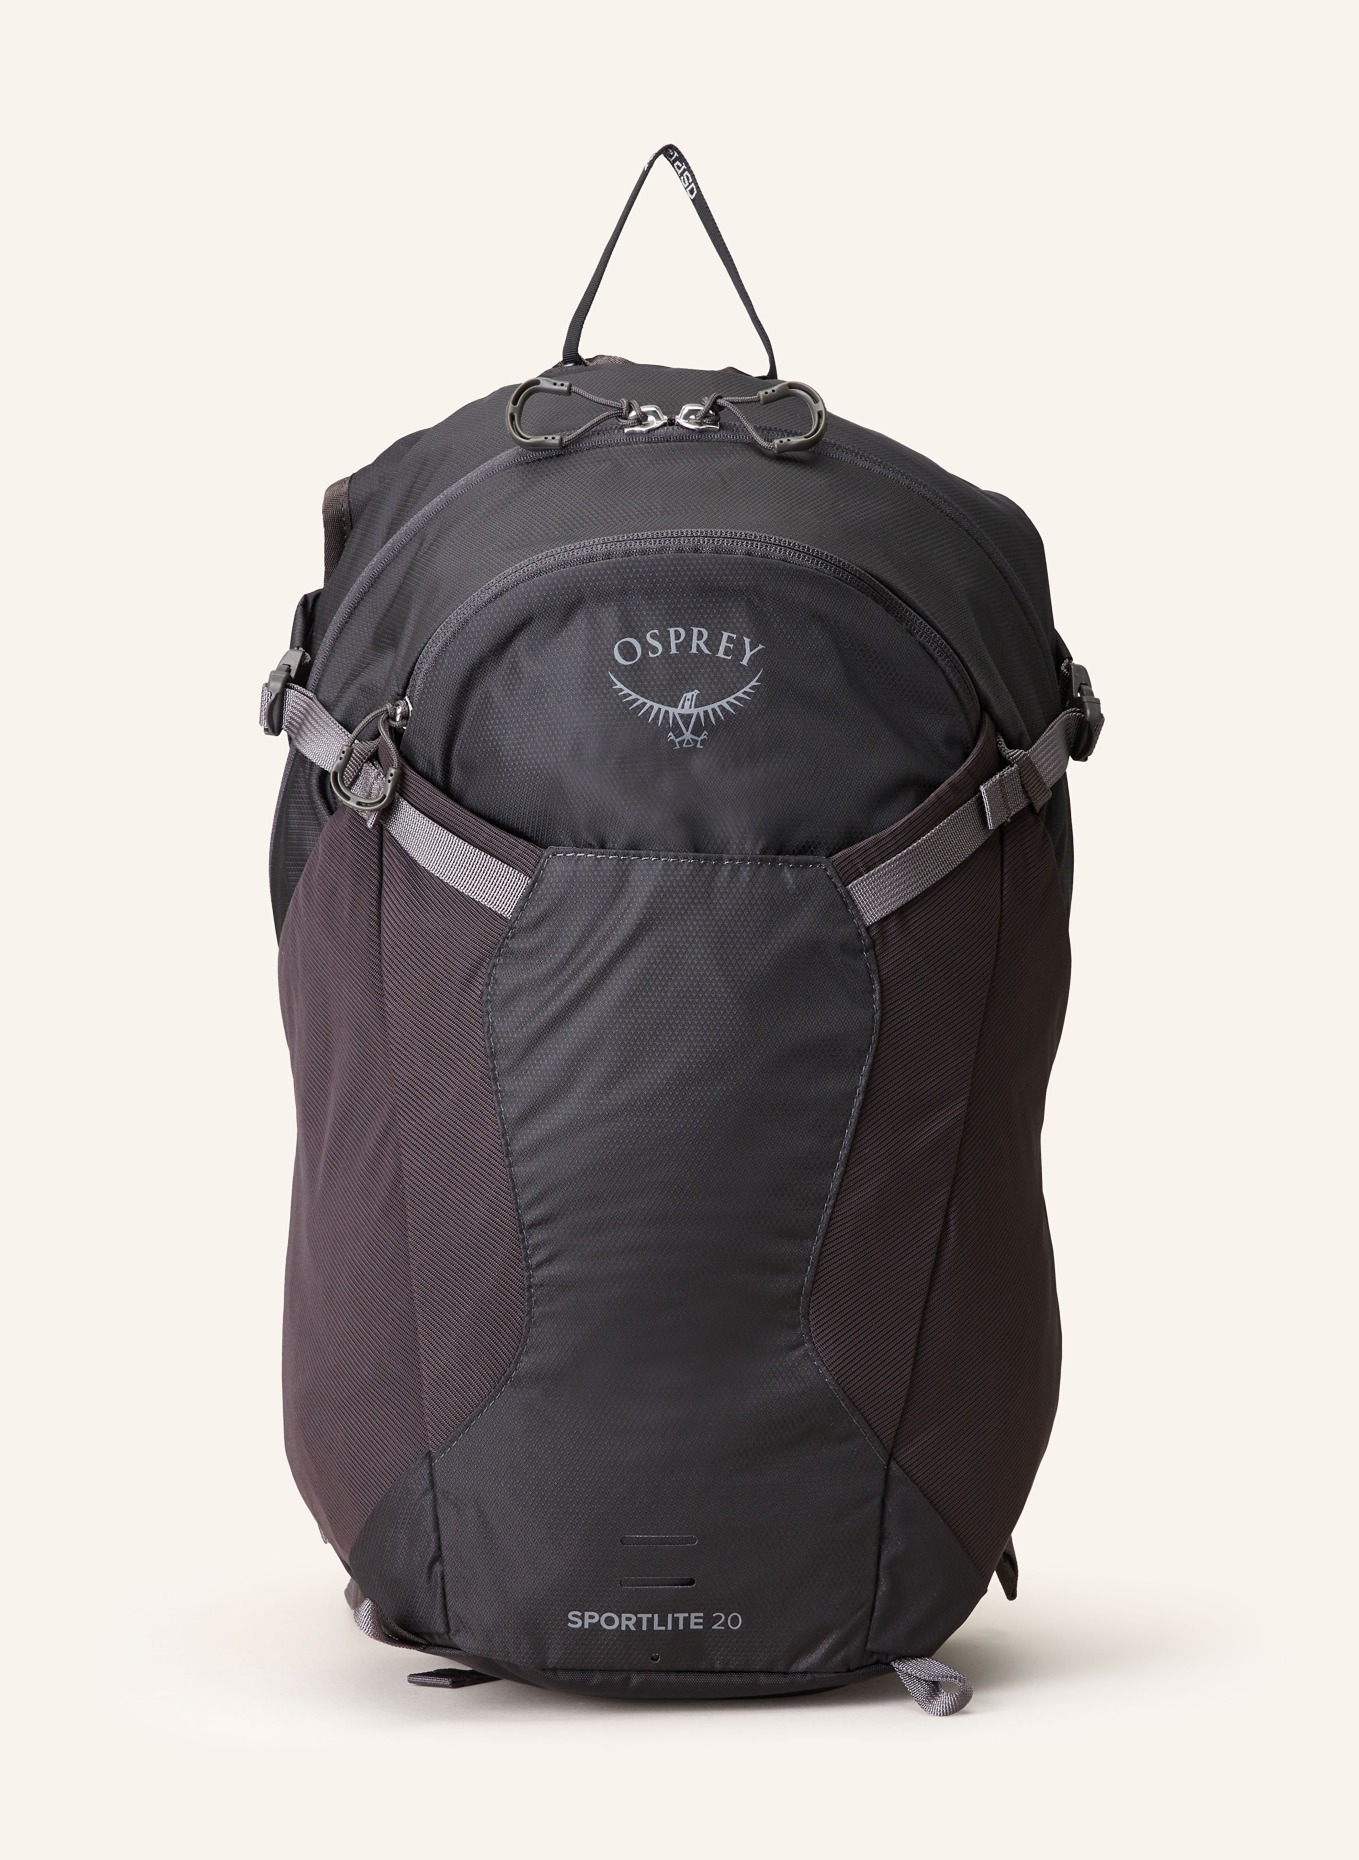 OSPREY Backpack SPORTLITE 20 l, Color: DARK GRAY (Image 1)